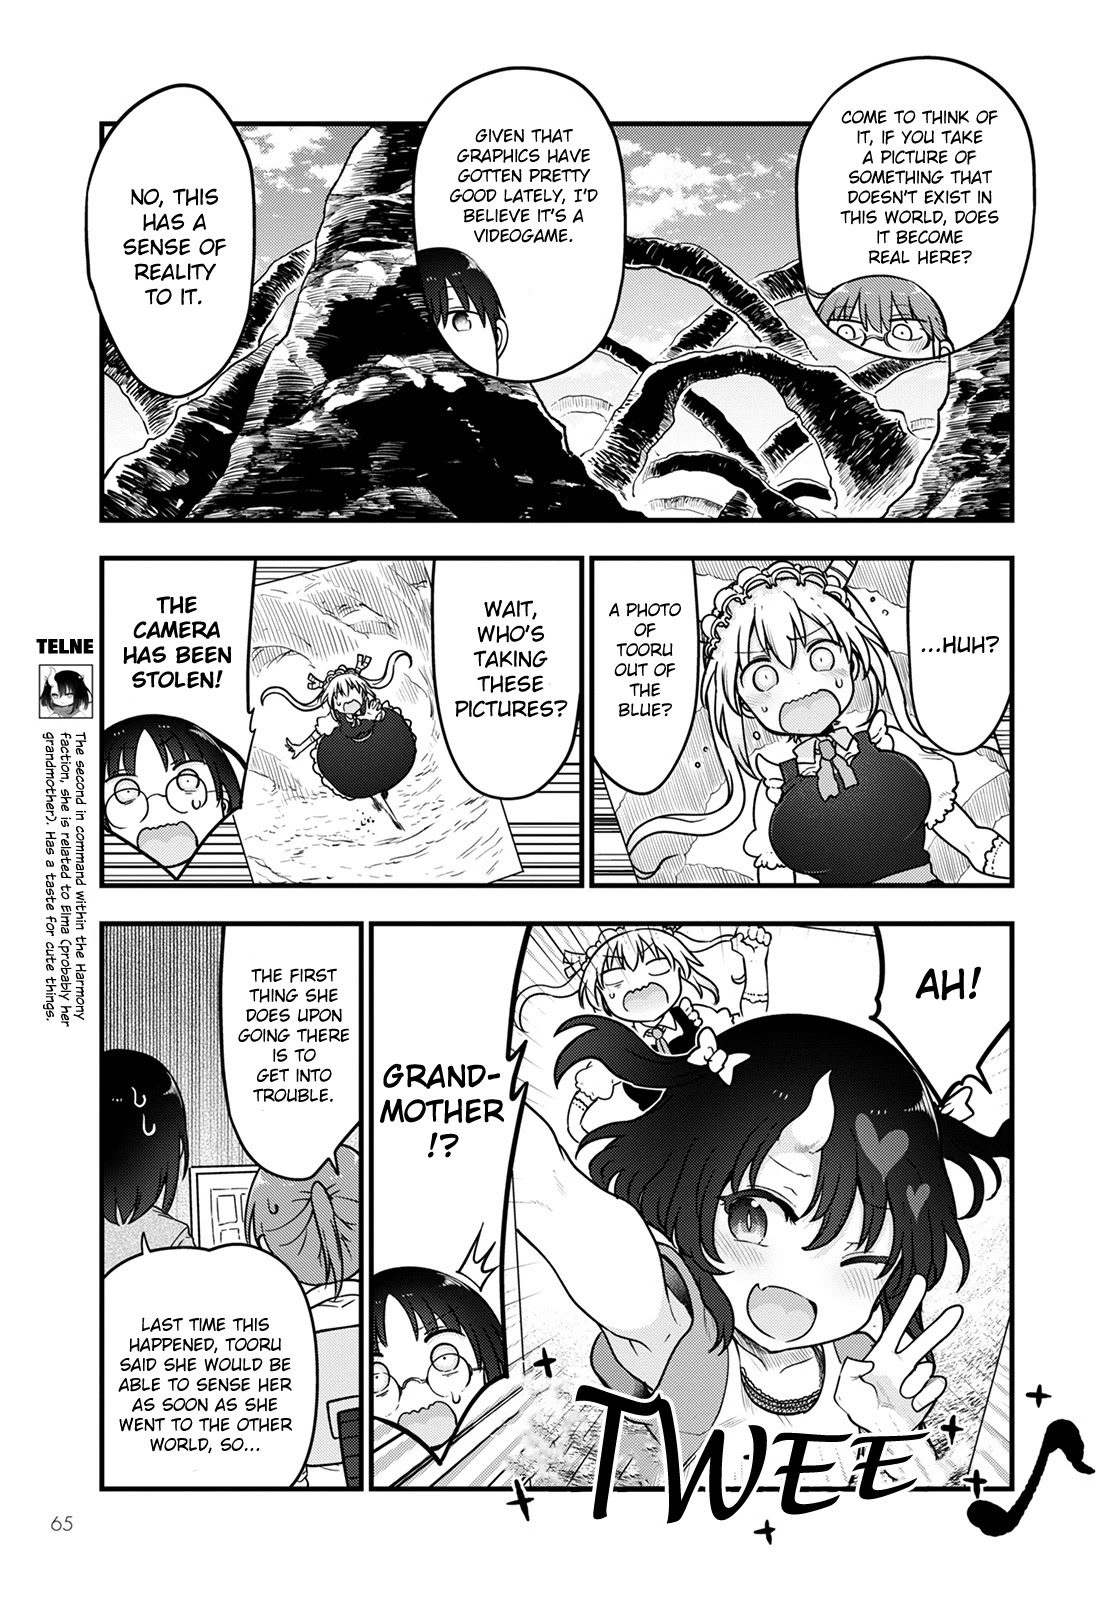 obayashi-san Chi no Maid Dragon, Miss Kobayashis Dragon Maid, The maid dragon of Kobayashi-san